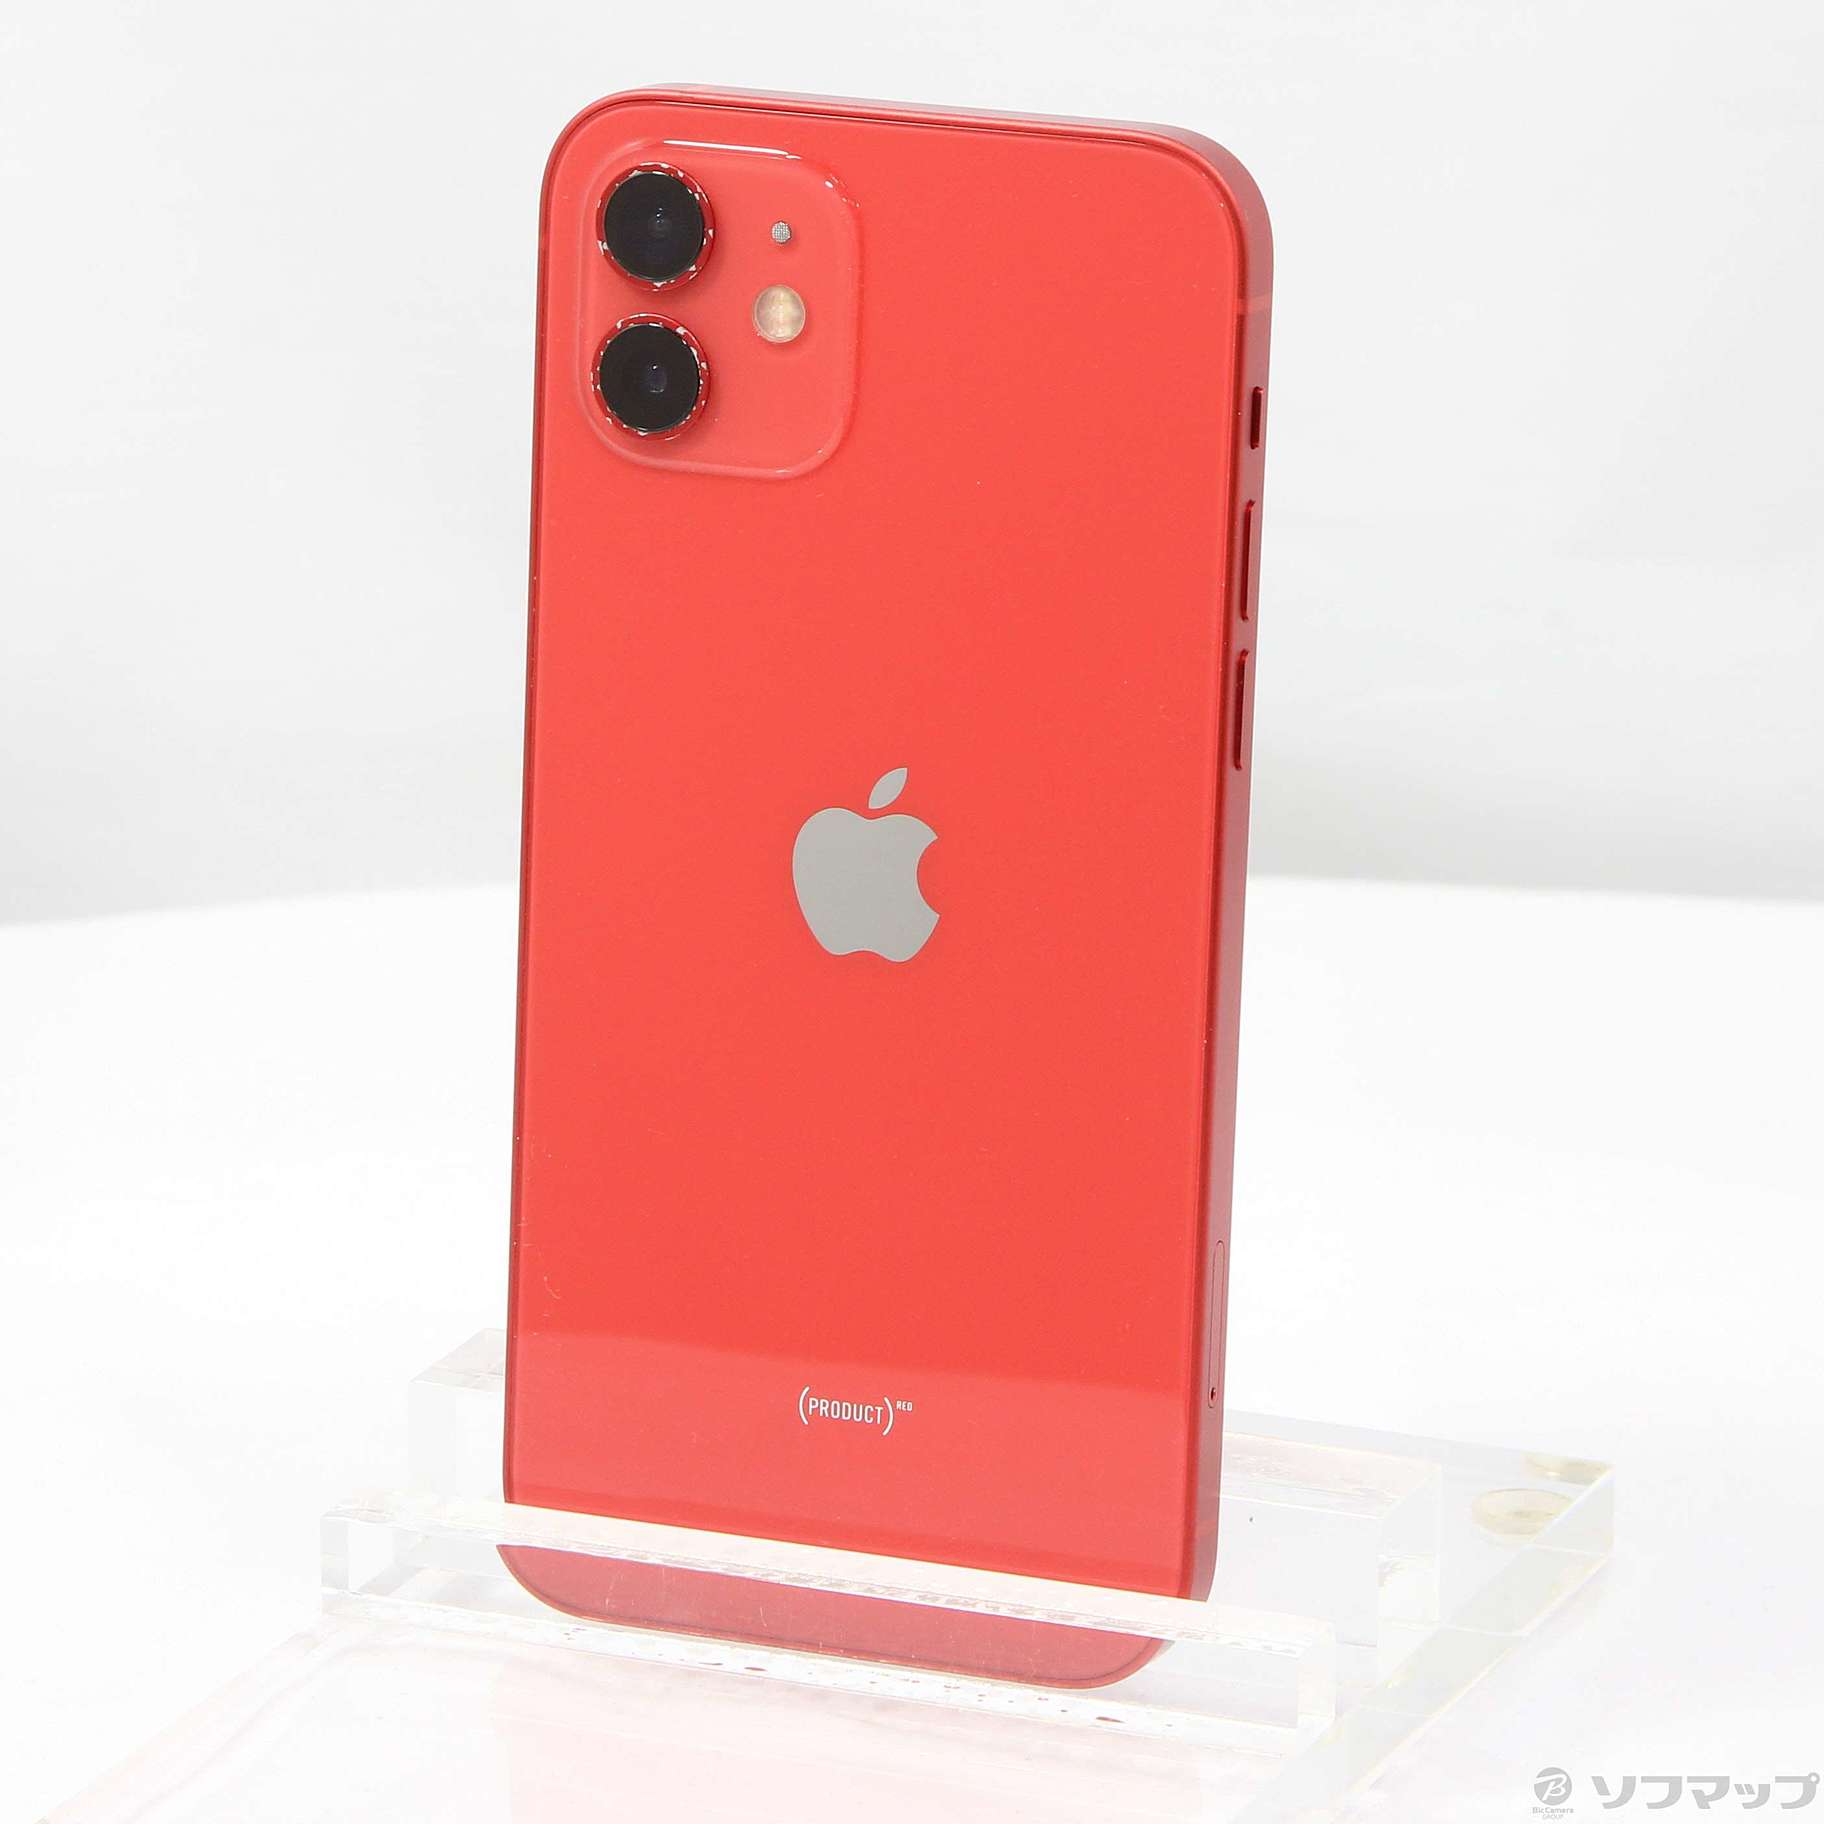 欲しいの ワイモバイル iPhone mini (PRODUCT)RED iPhone 12 mini 12